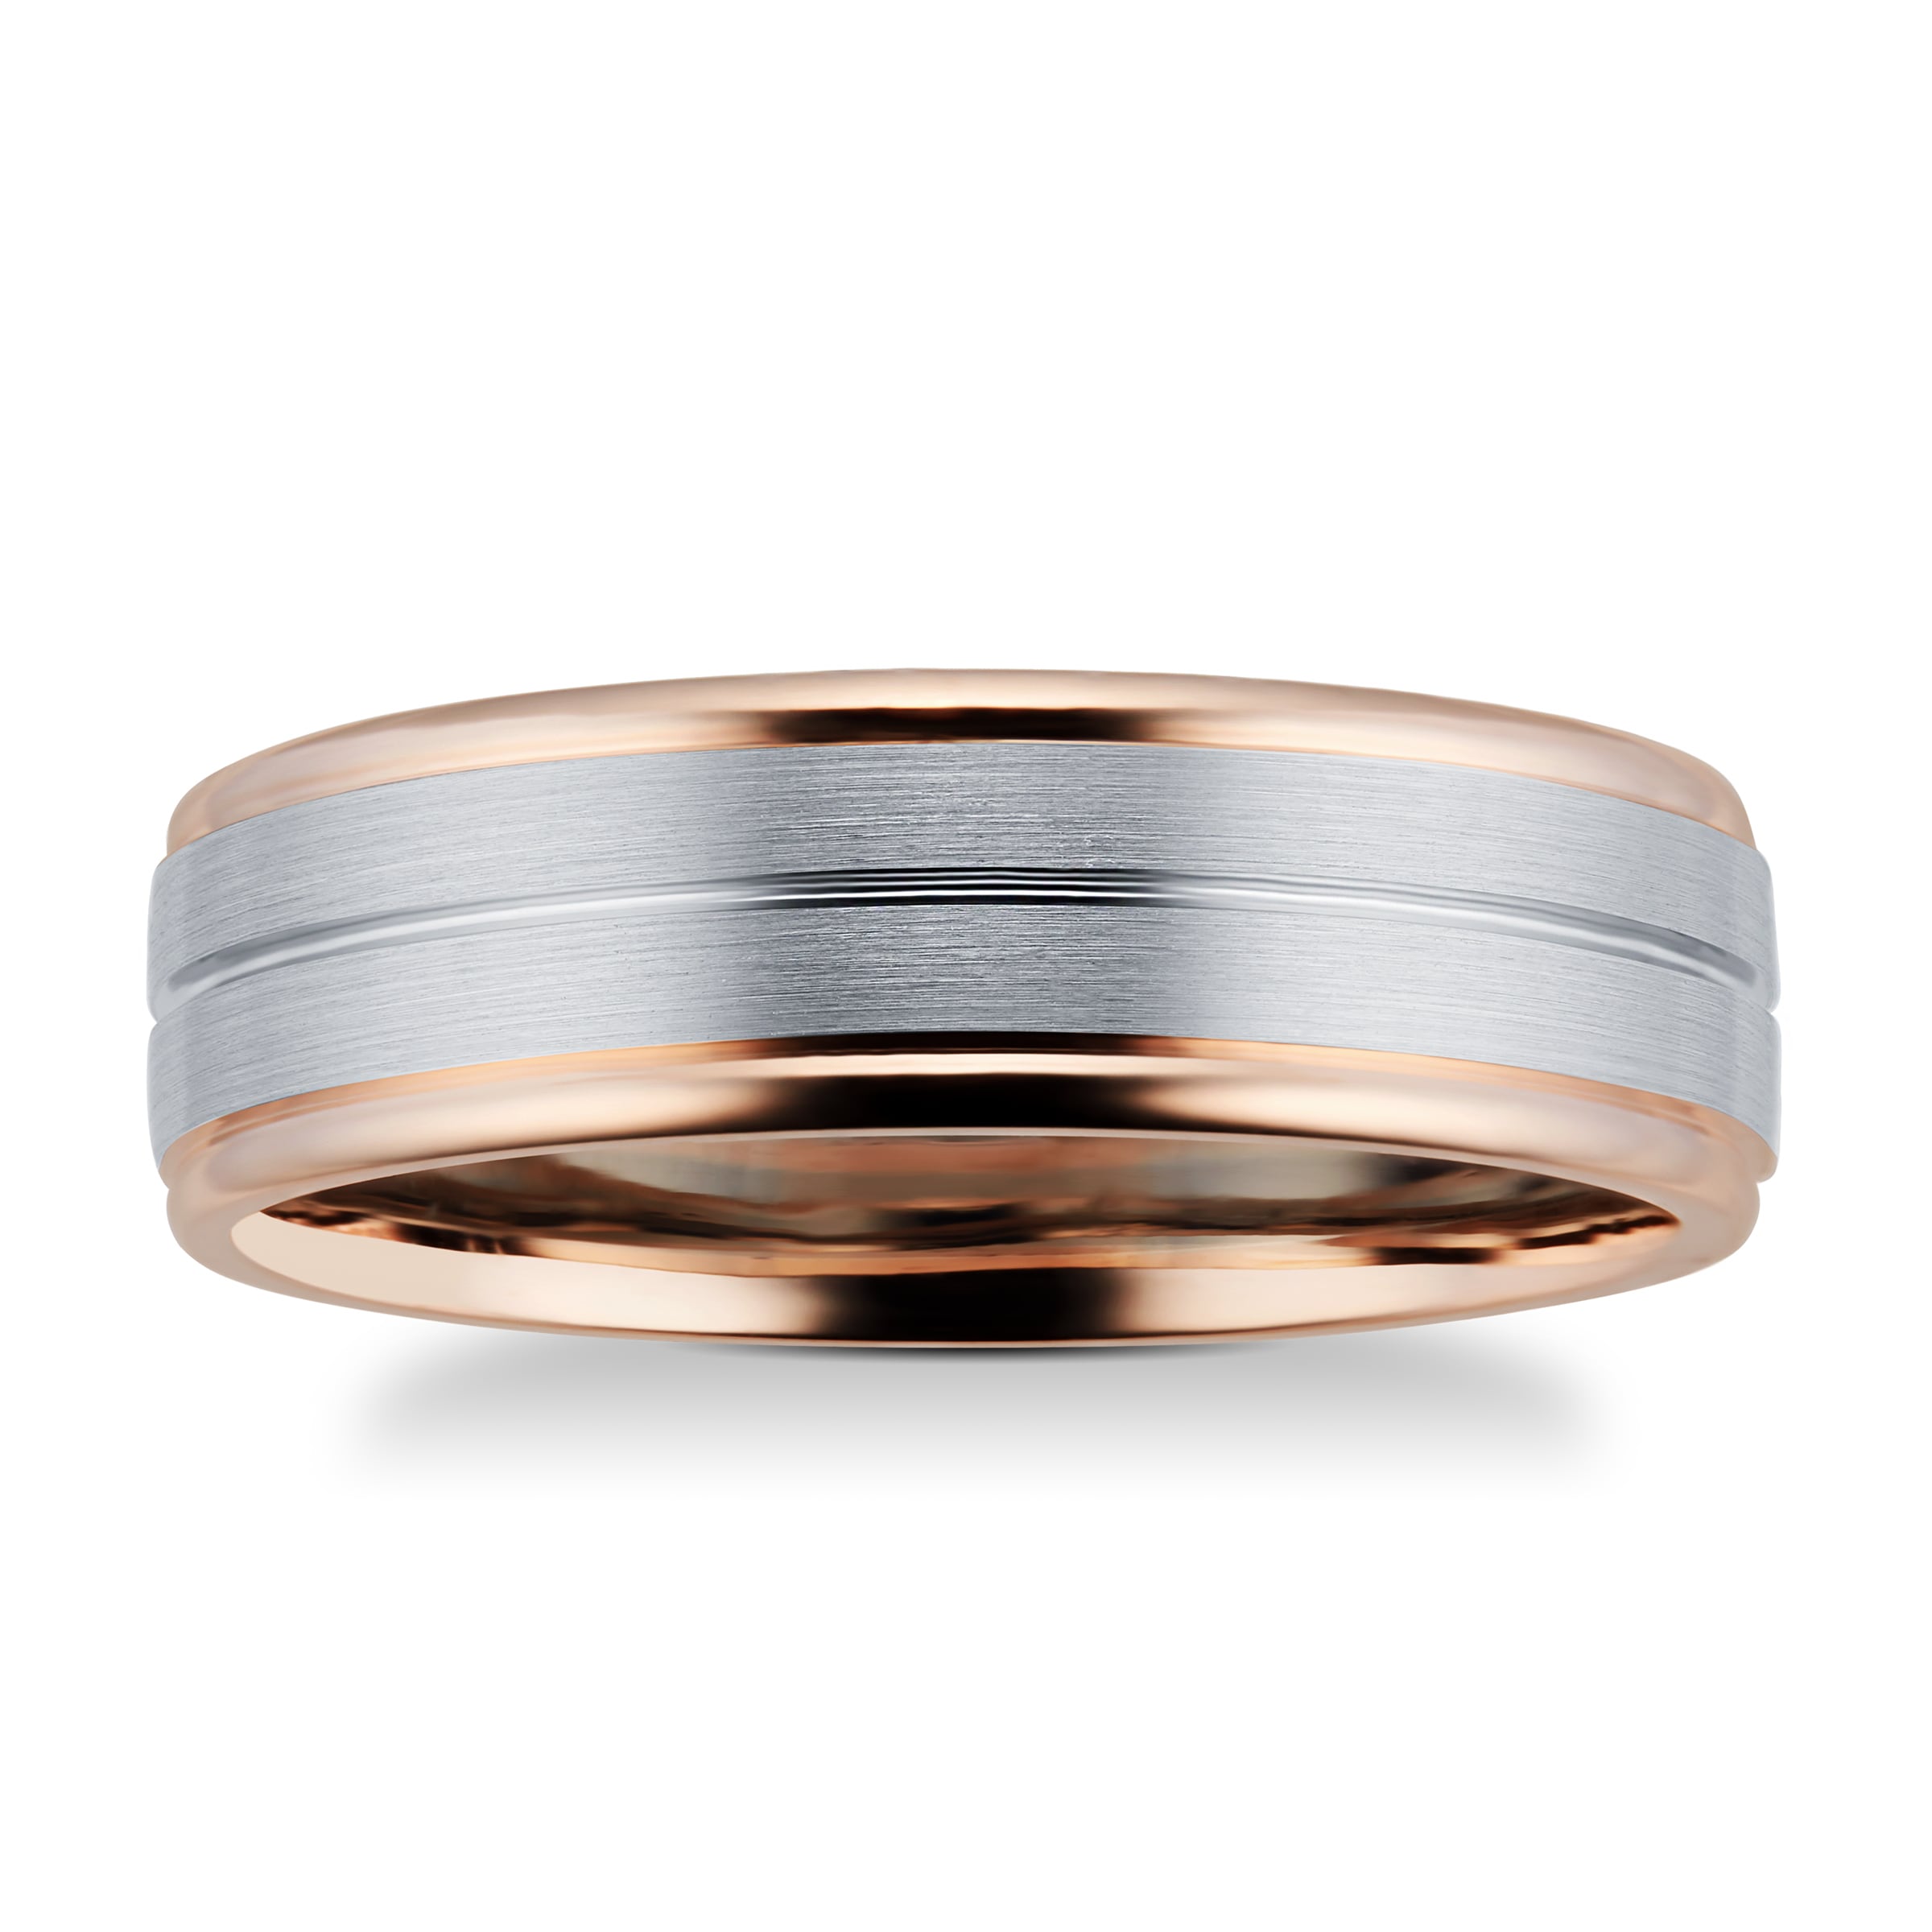 9ct Rose Gold & Palladium Wedding Ring - Ring Size R